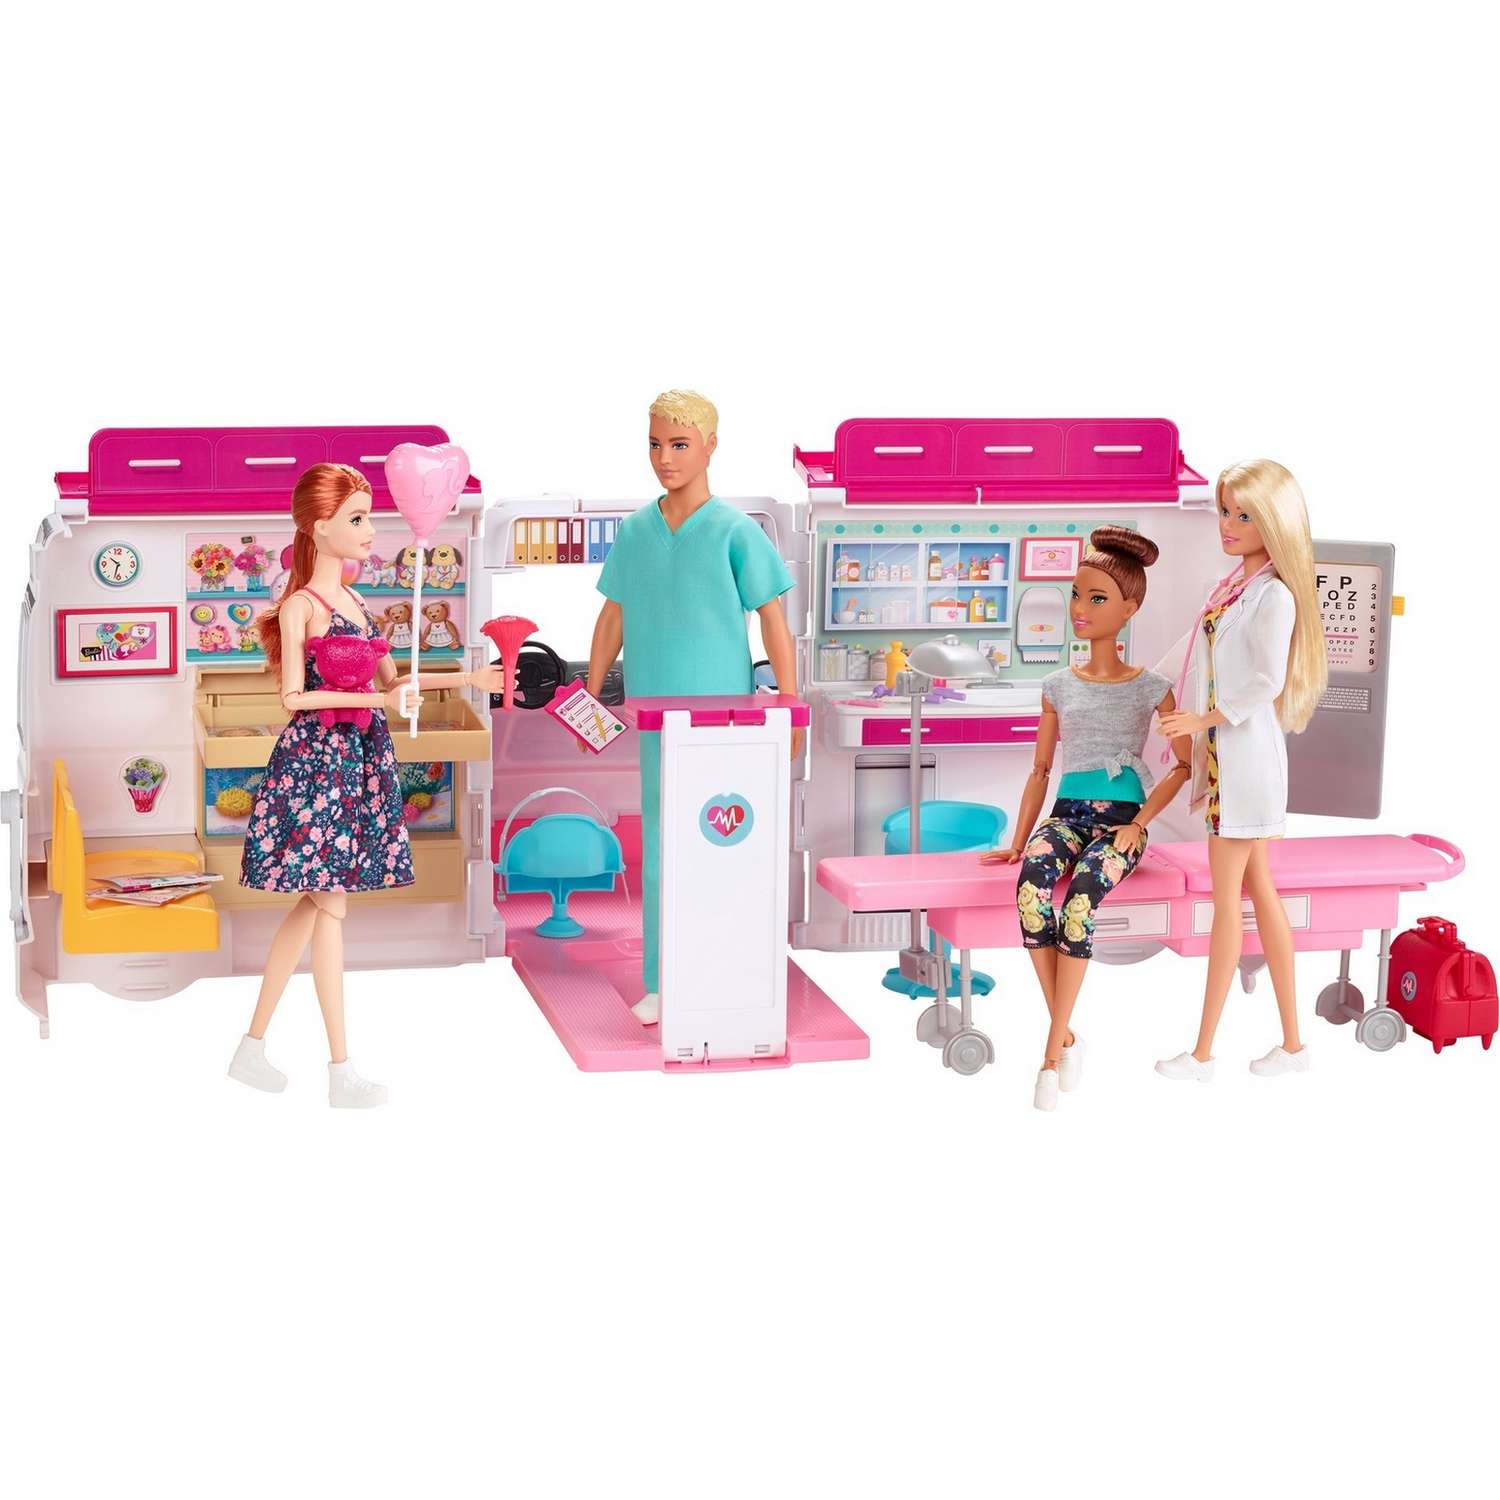 Набор игровой Barbie Кем быть? Клиника 2 куклы+машина скорой помощи GMG35 GMG35 - фото 4